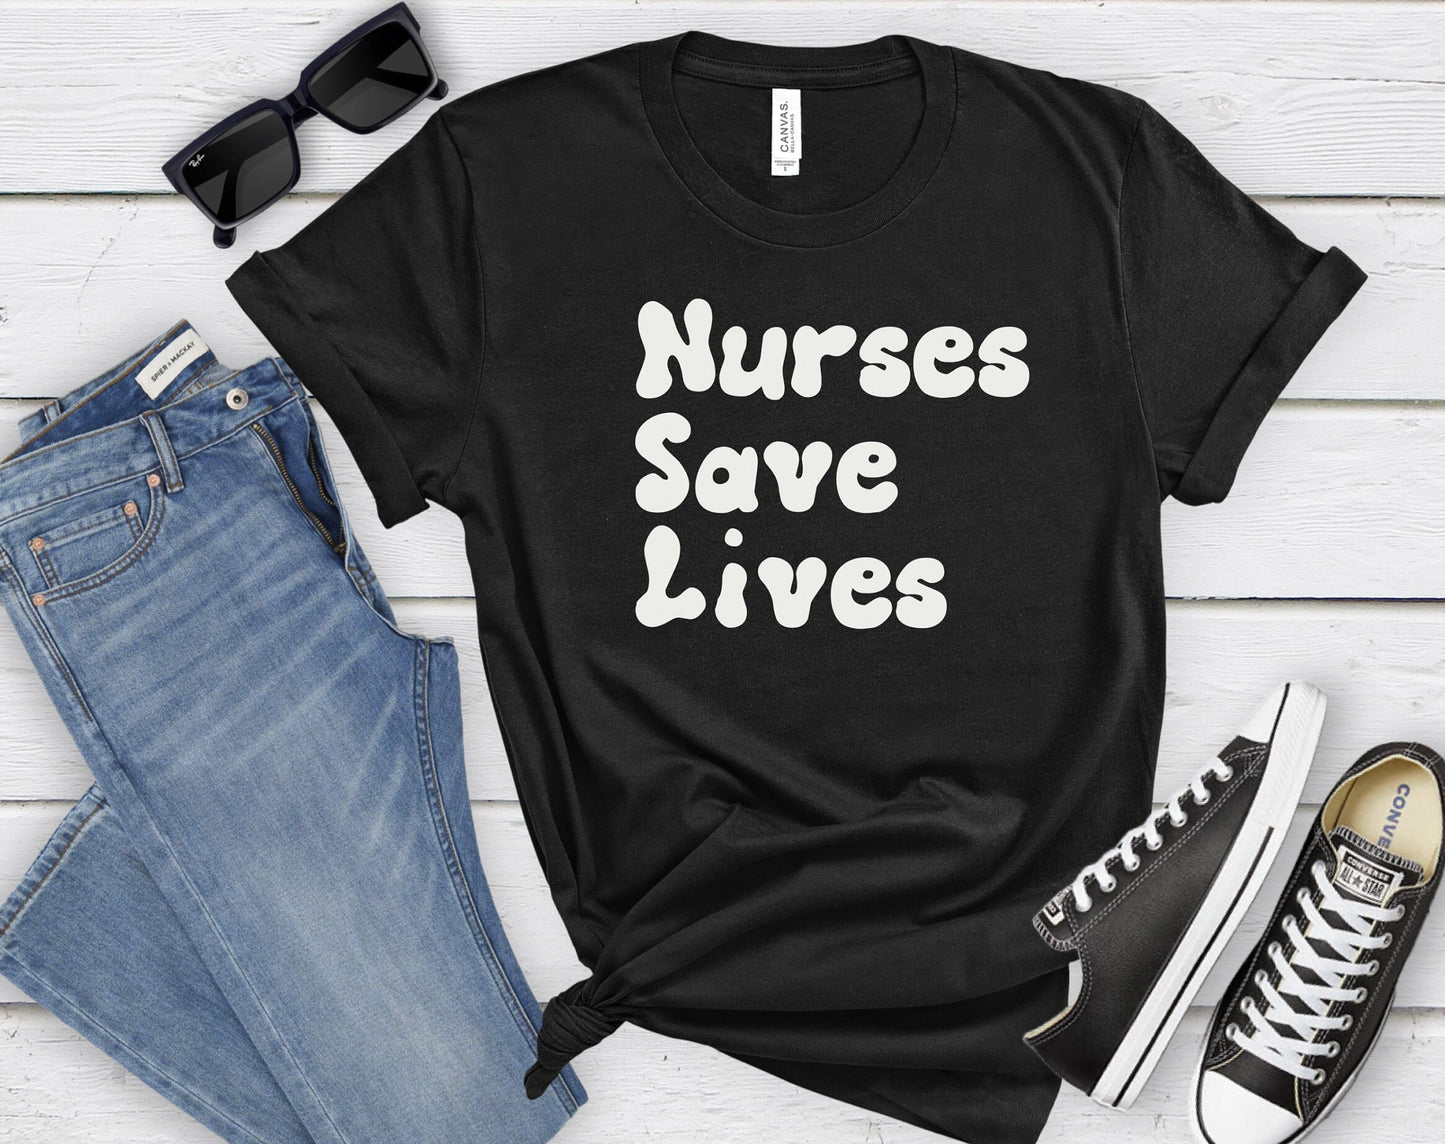 Nurses Save Lives Shirt, I love nurses shirt, Awesome gift shirt for nurses, gift shirt for a special nurse, Thank you gift shirt for nurses